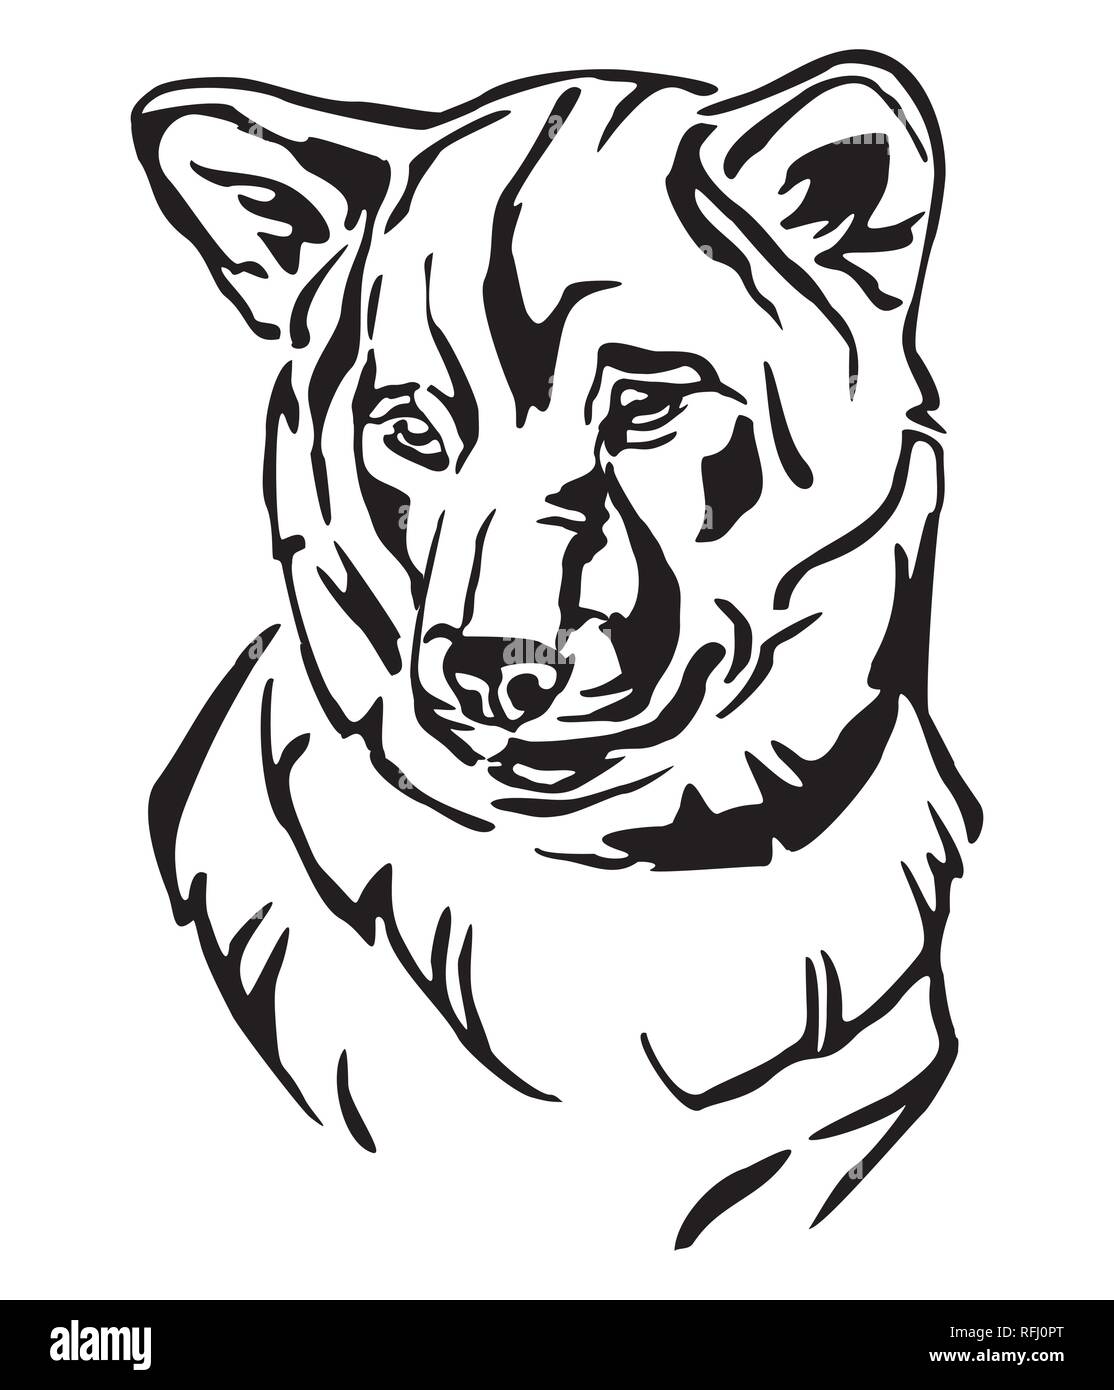 Profilo decorativo ritratto di cane Shiba Inu, illustrazione vettoriale in colore nero isolato su sfondo bianco. Immagine per design e tatuaggio. Illustrazione Vettoriale